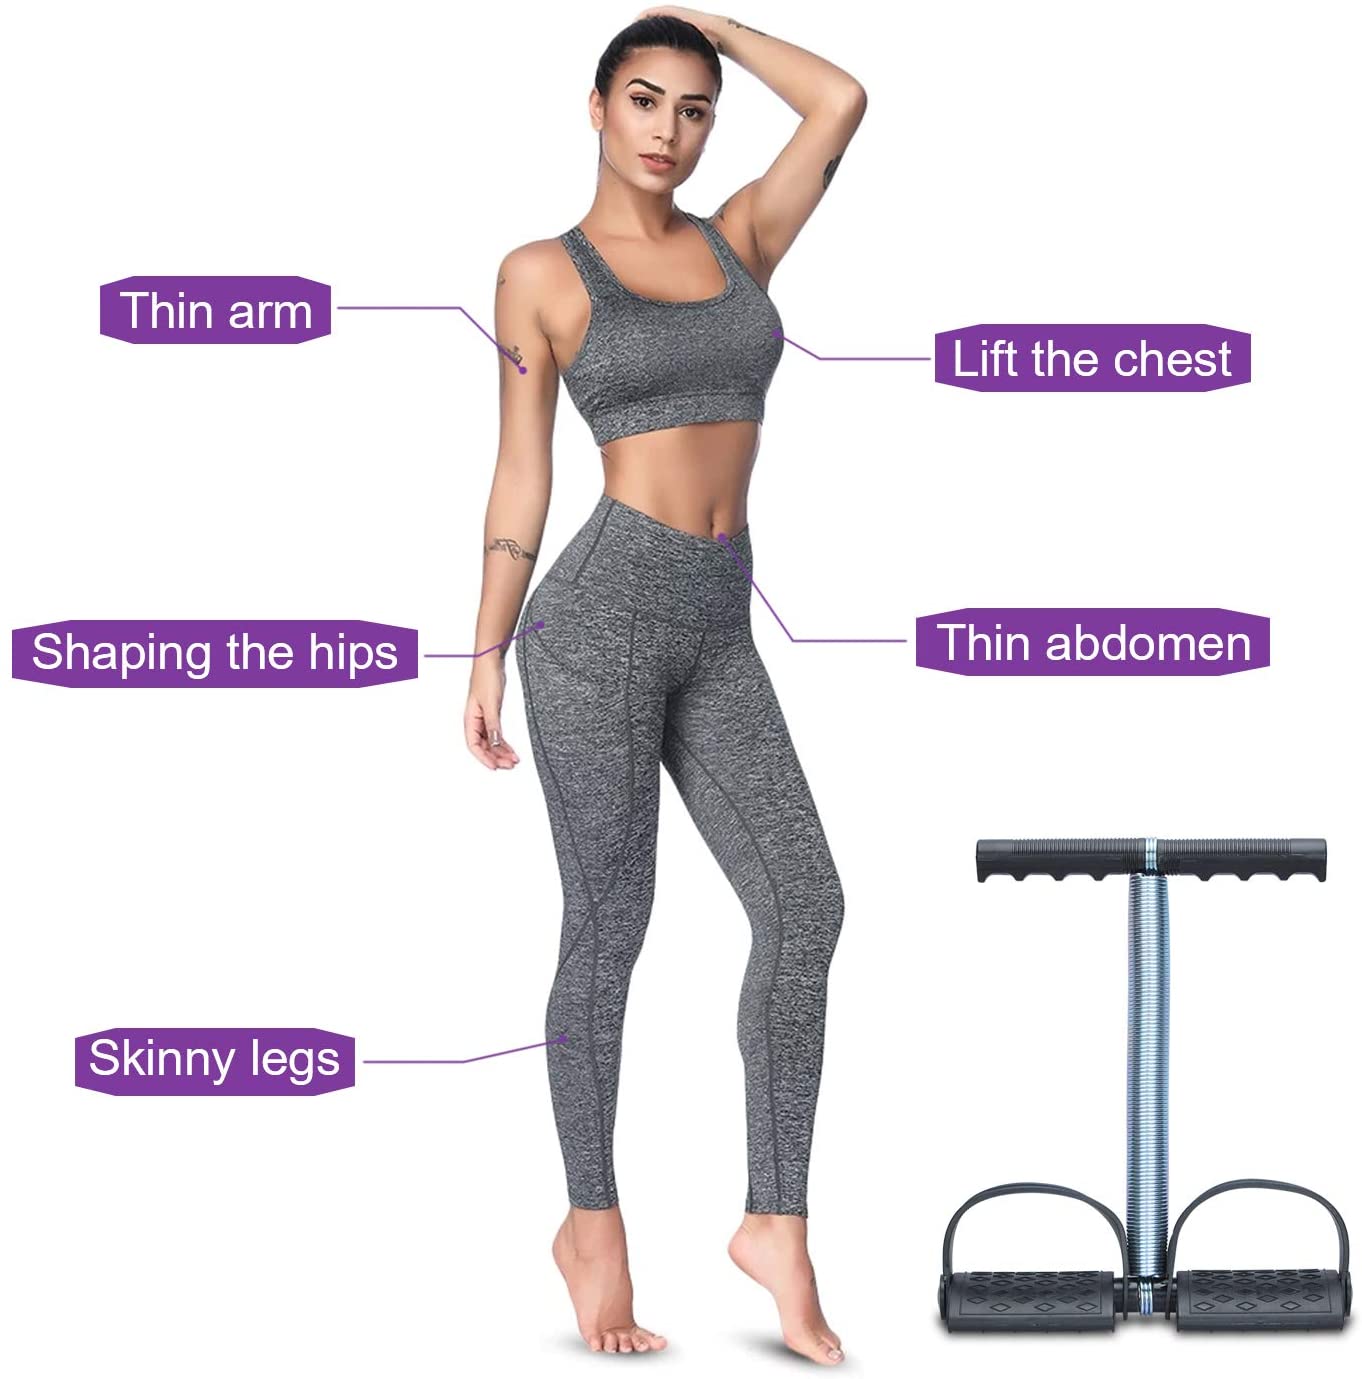 Tummy Trainer - Multipurpose Fitness Equipment for Men and Women